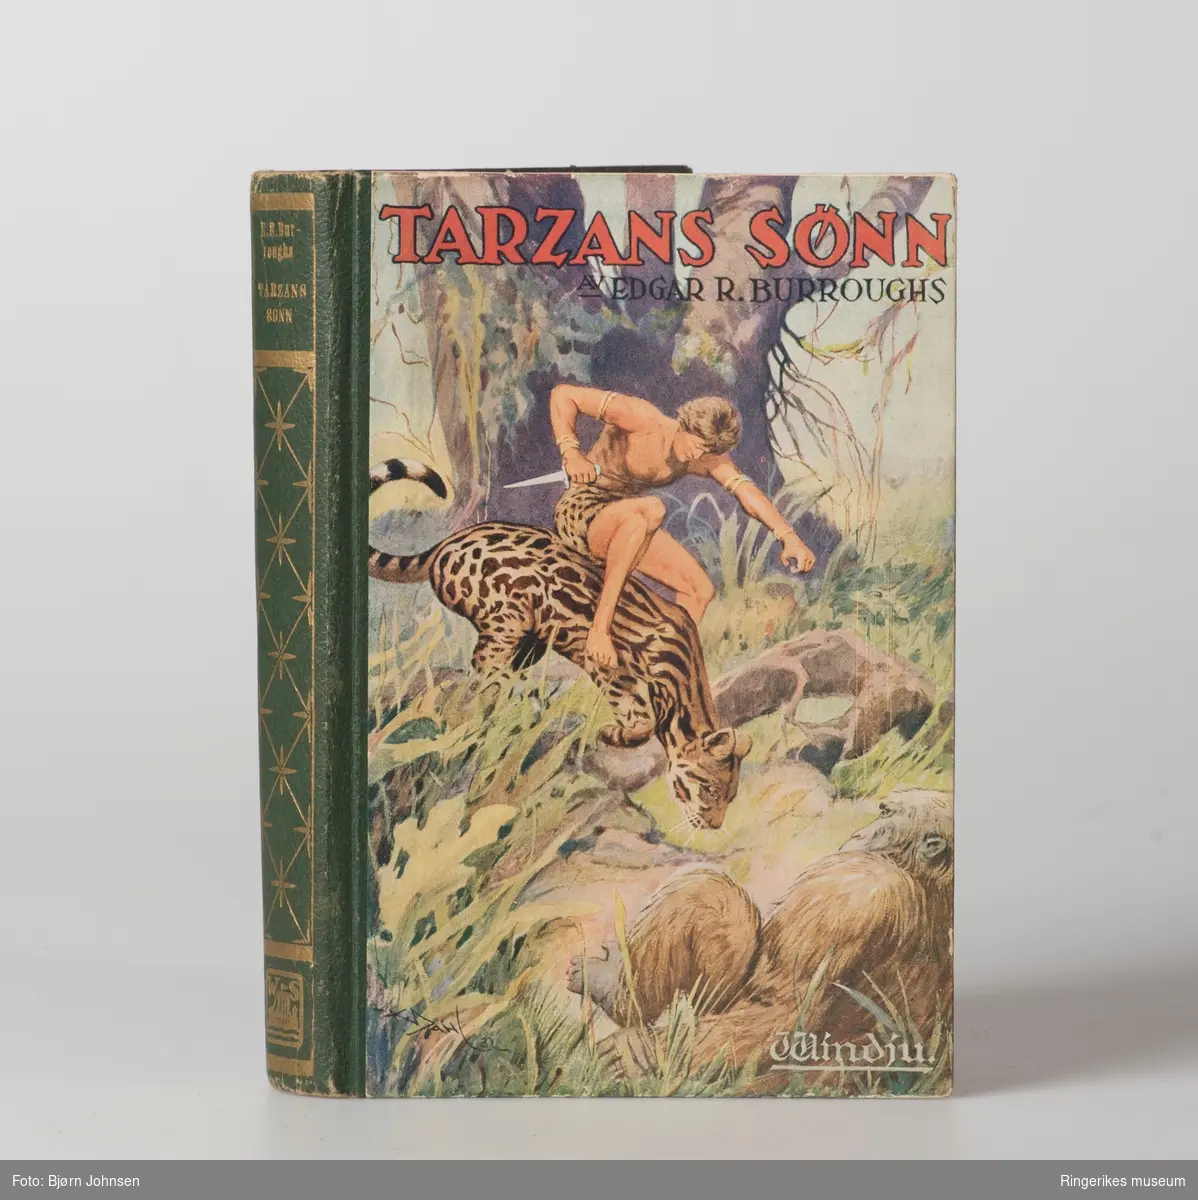 Guttebok: illustrasjon av Tarzan; Jentebøker (2) illustasjon av barn og jenter,; Eventyrbok: store blader i farger